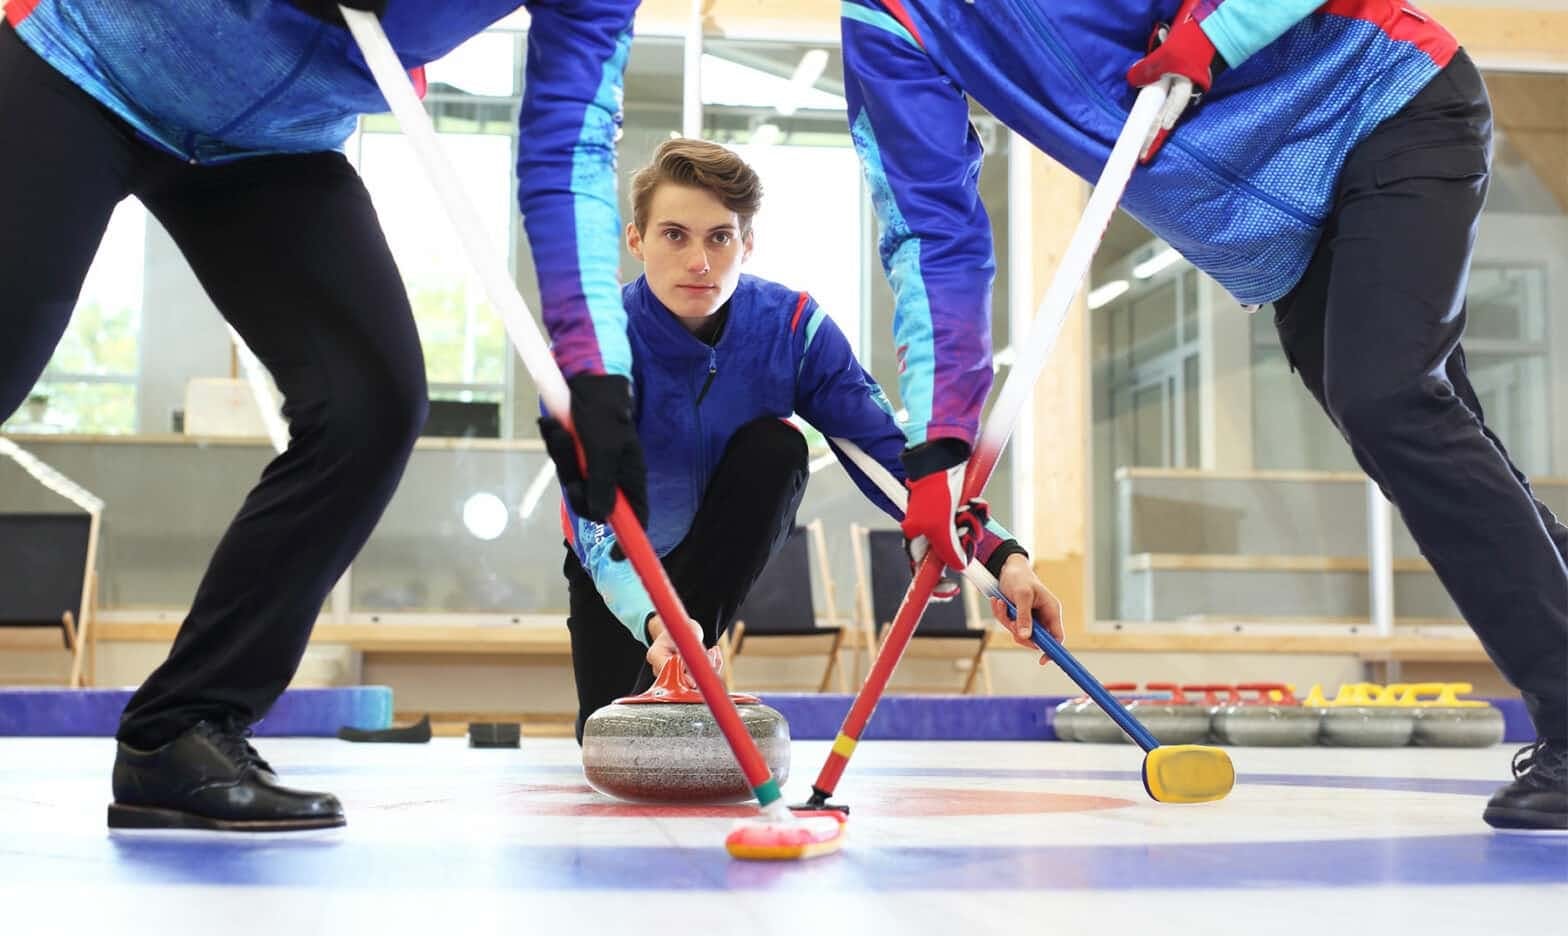 El curling como deporte: qué es, cuál es su historia y cómo se juega